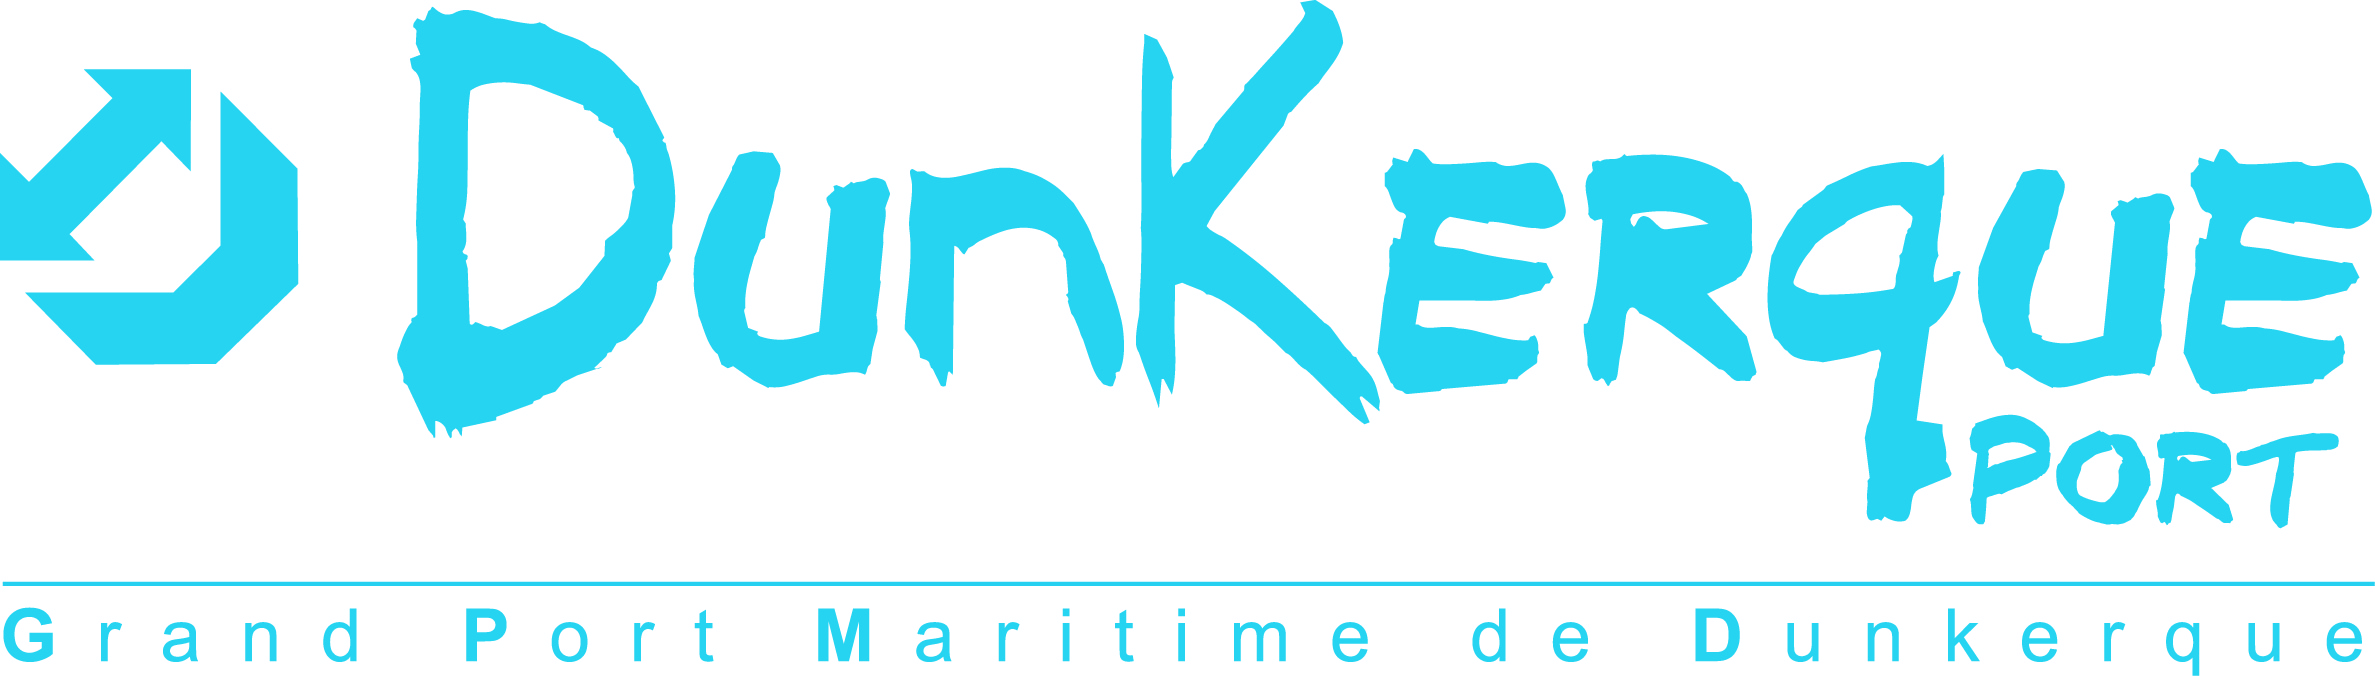 Grond Port Maritime de Dunkerque